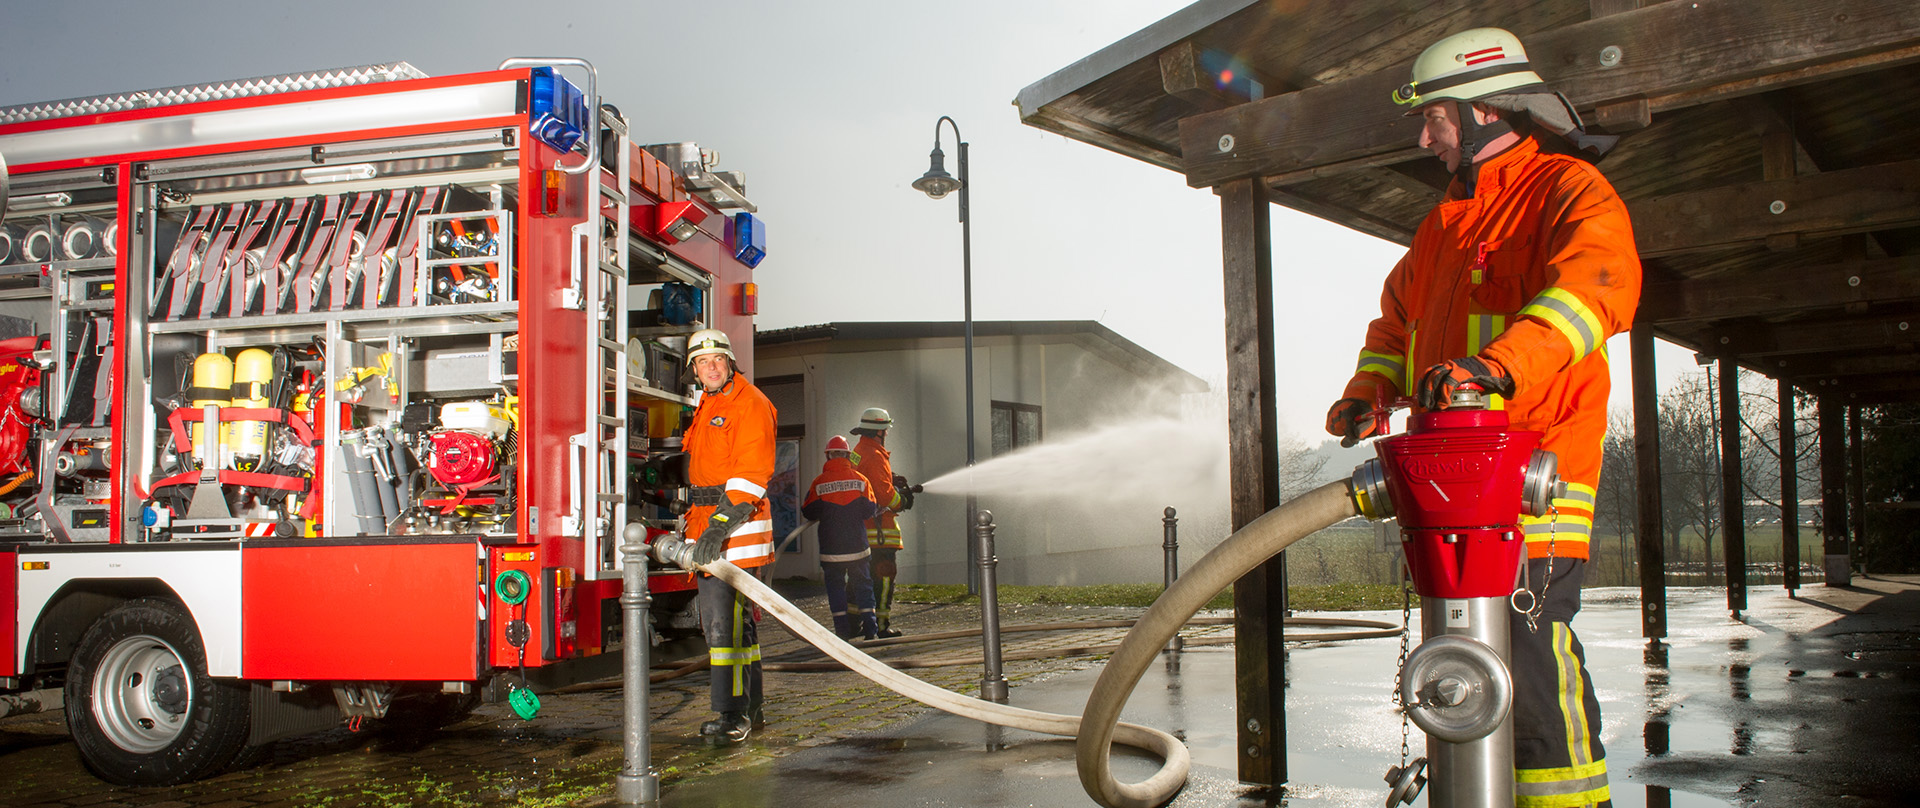 Aufnahme zum Thema Wasserverbrauch - Feuerwehrim Einsatz mit Wasserschlauch